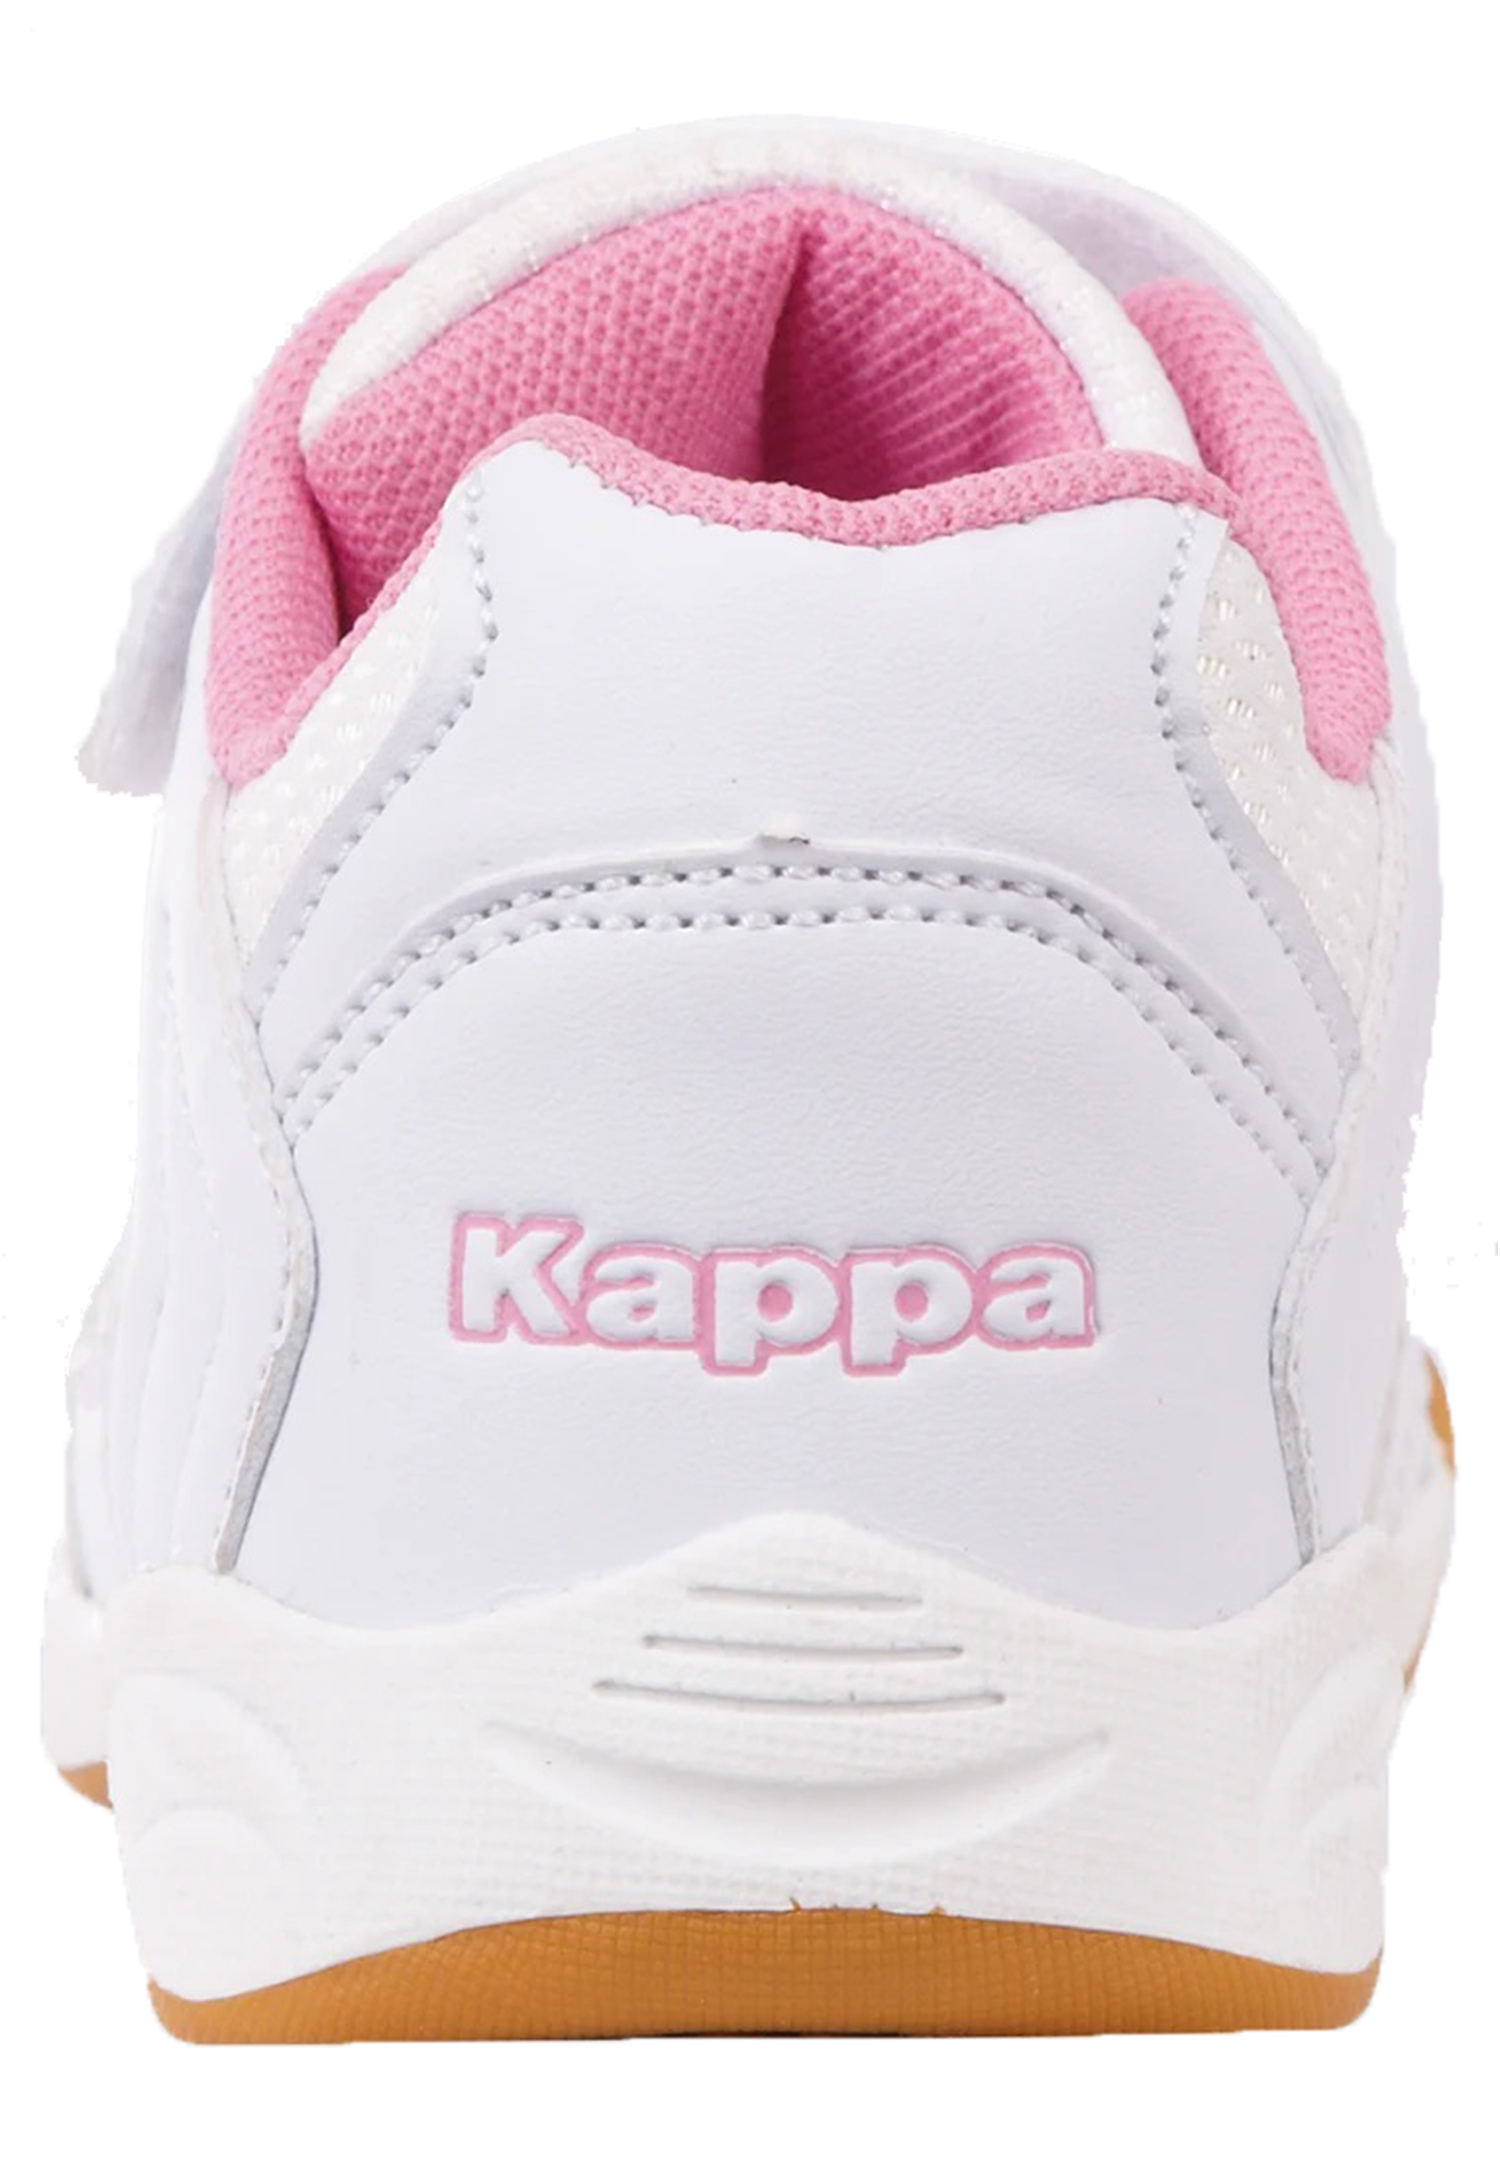 Kappa Mädchen Sneaker Turnschuh 260765T 1021 weiss/rosa